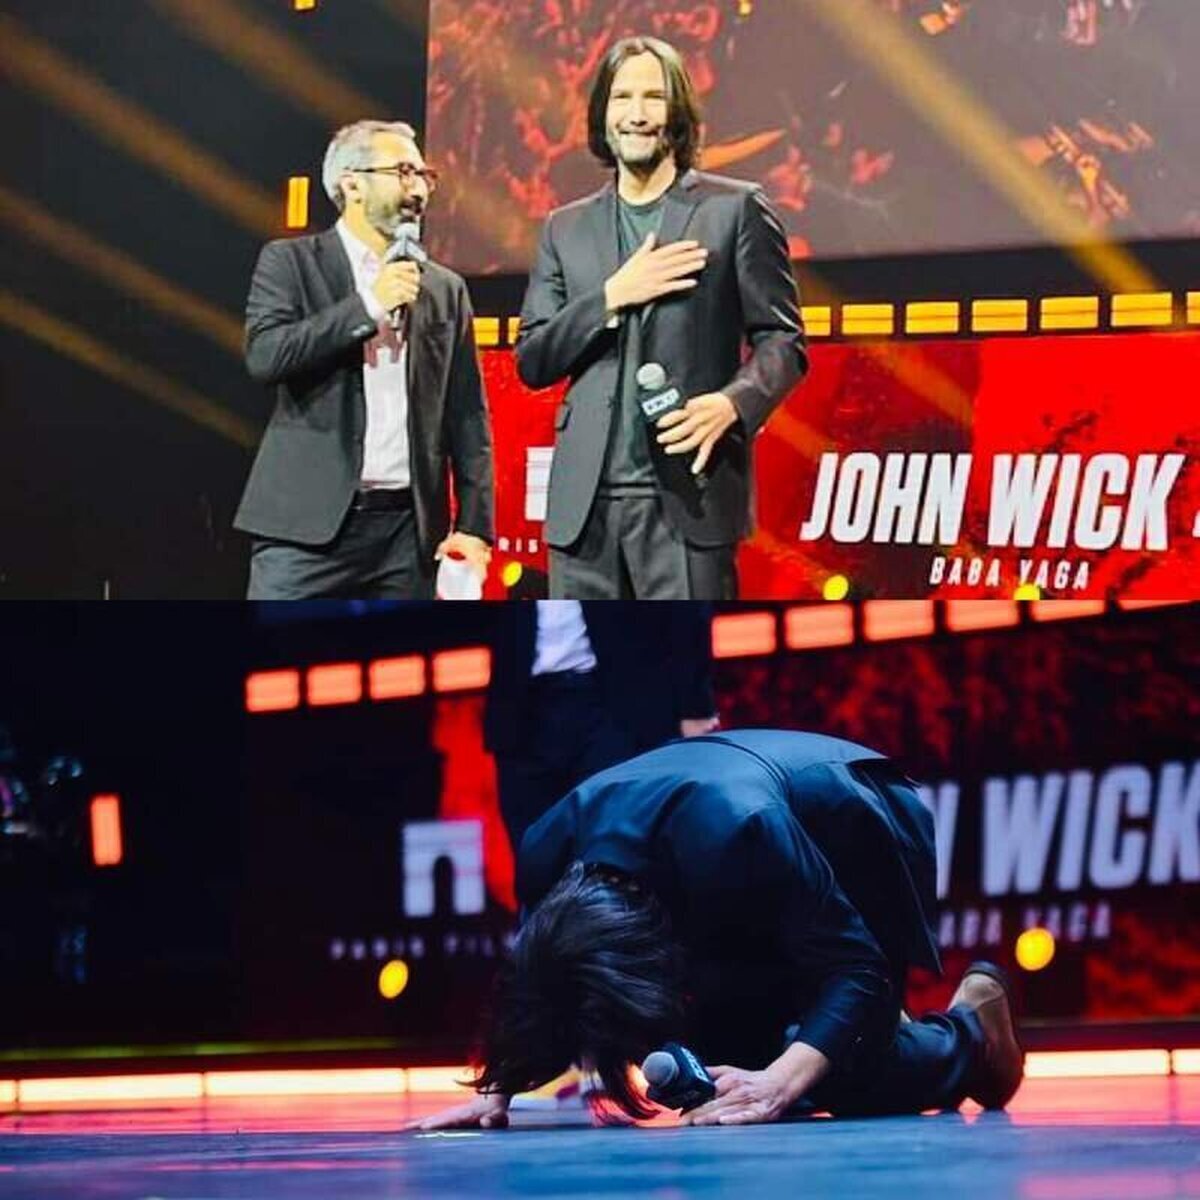 ¡LA HUMILDAD DE KEANU REEVES! El actor que da vida a John Wick agradeció a sus fans arrodillándose ante el público en el evento de CCPX de Brazil. ¡Eres grande Keanu